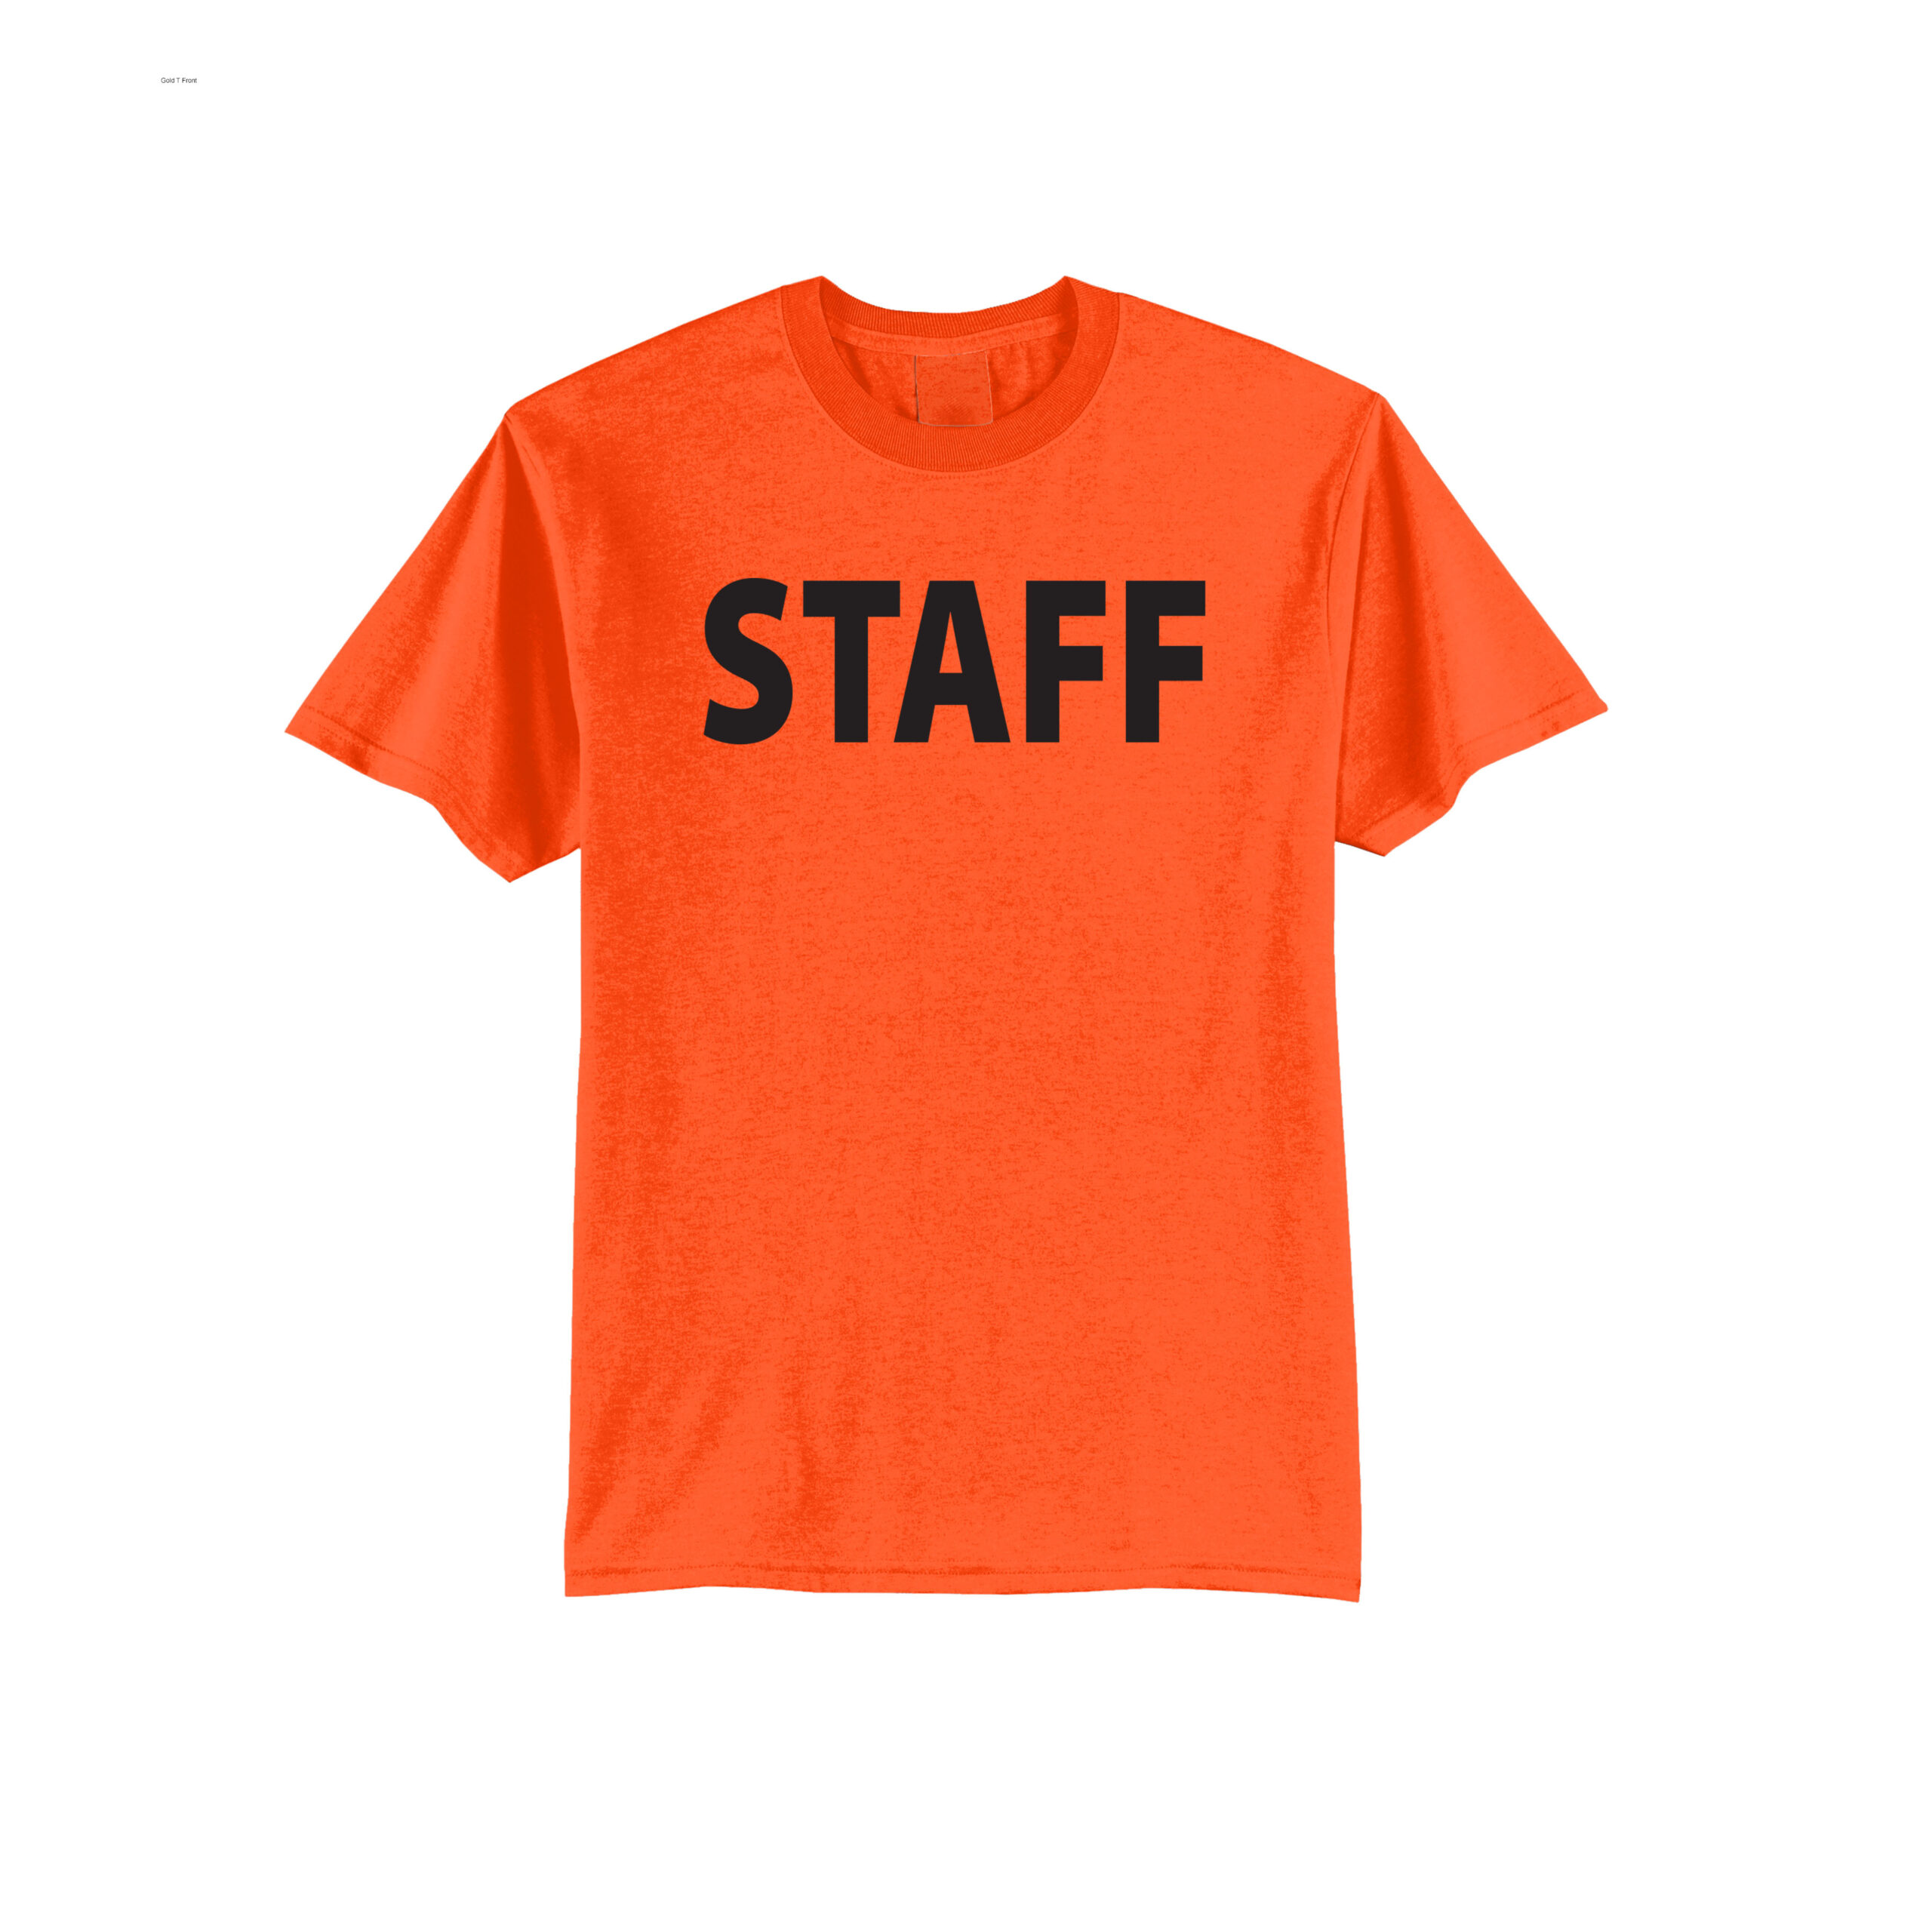 staff t shirt orange front